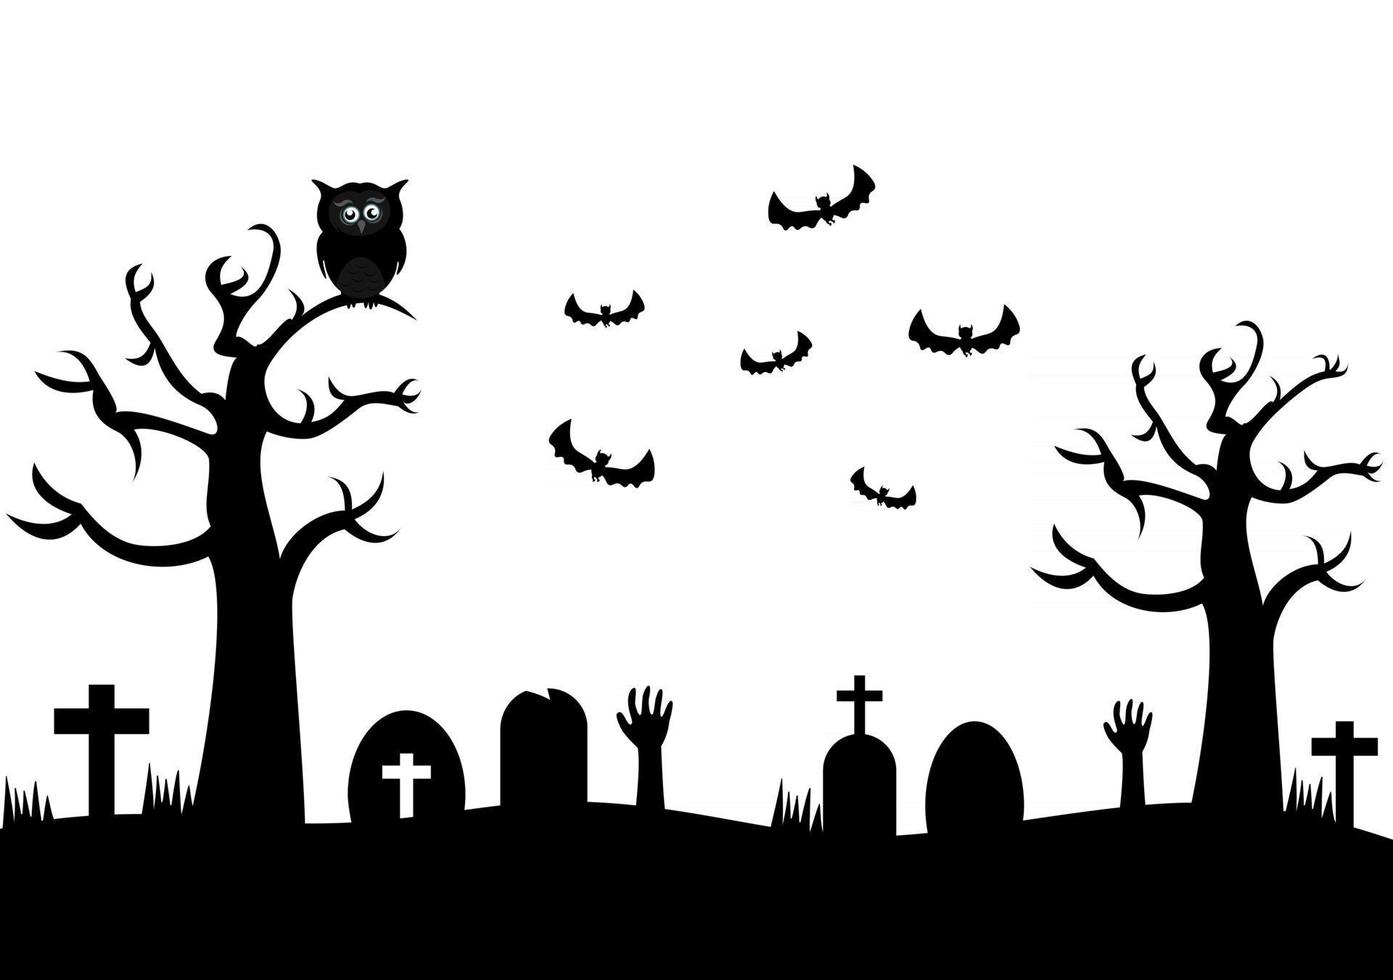 ilustración de la página de destino del fondo de la fiesta de la noche de halloween vector